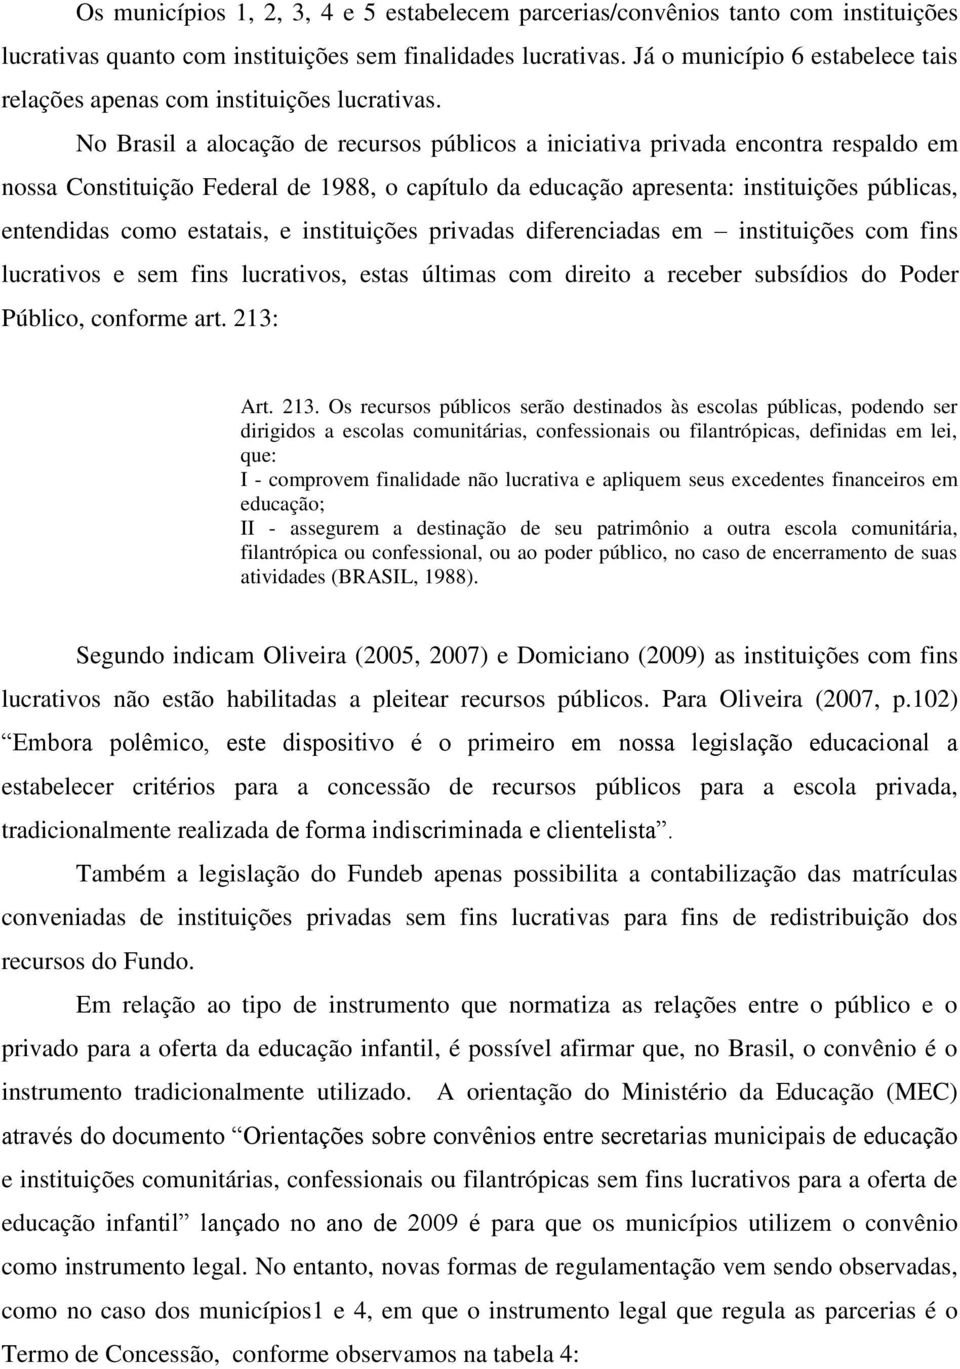 No Brasil a alocação de recursos públicos a iniciativa privada encontra respaldo em nossa Constituição Federal de 1988, o capítulo da educação apresenta: instituições públicas, entendidas como